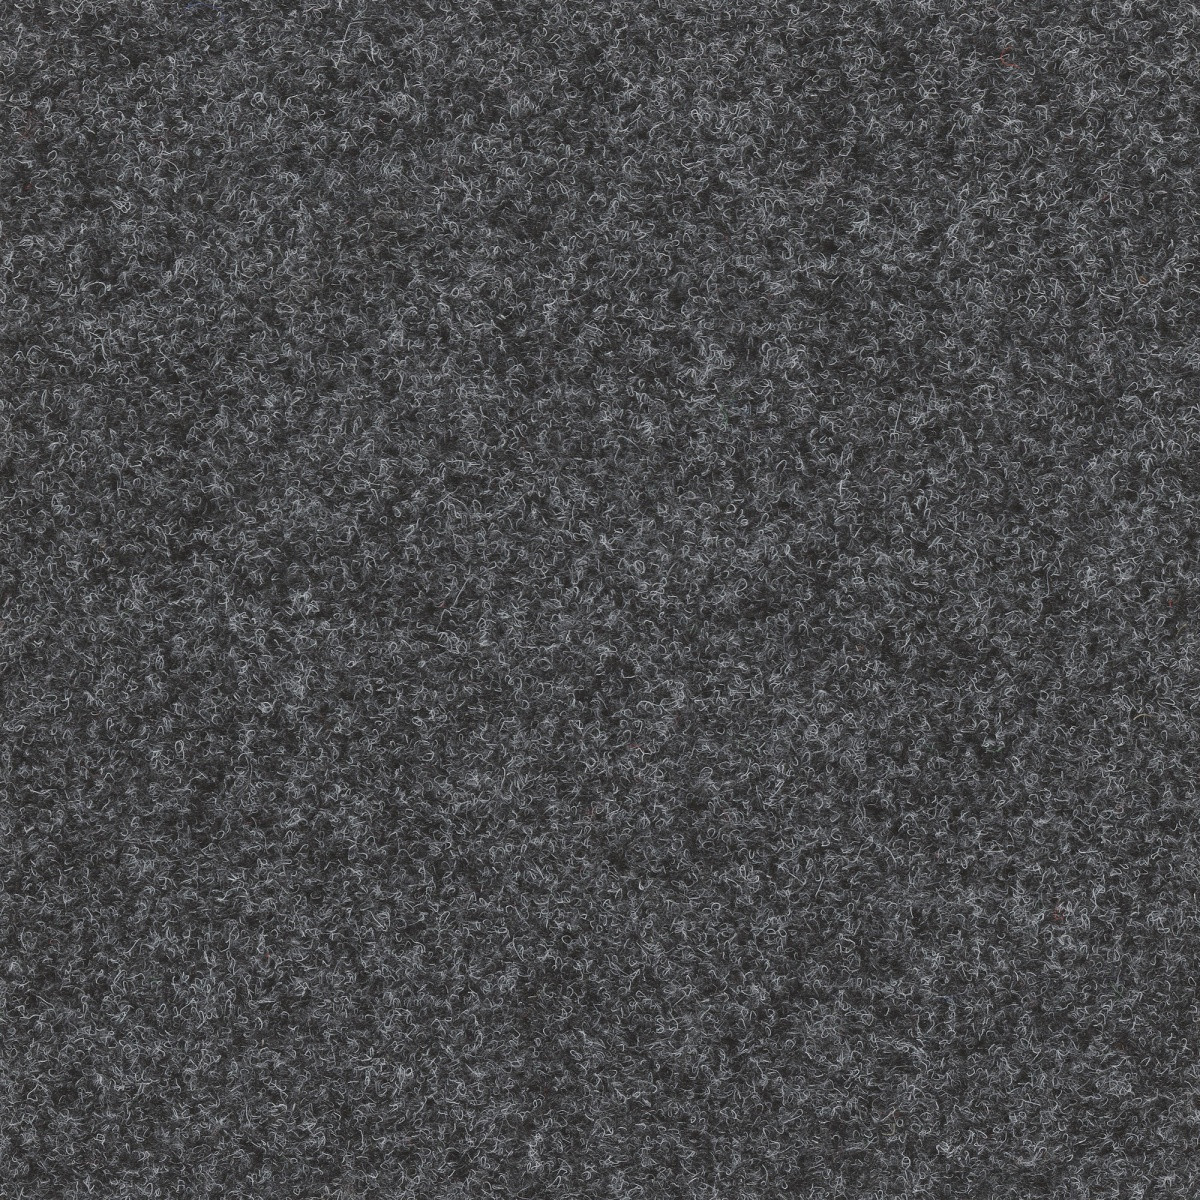 Metrážový koberec Omega Cfl 55142 tm. šedá, zátěžový